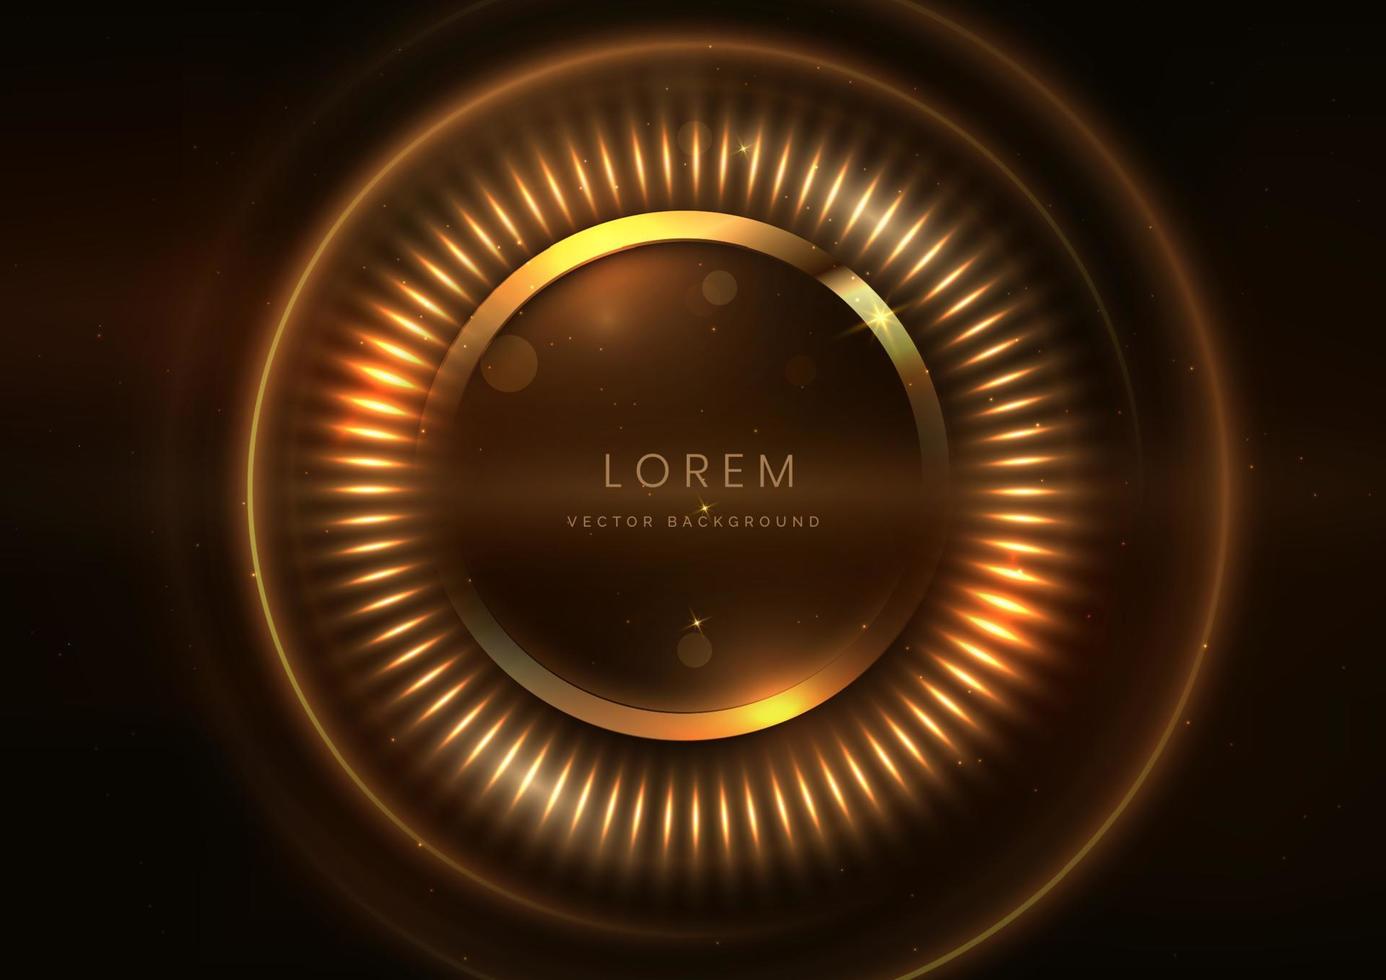 Círculo de oro 3d sobre fondo marrón oscuro con efecto de iluminación y espacio para texto. estilo de diseño de lujo. vector